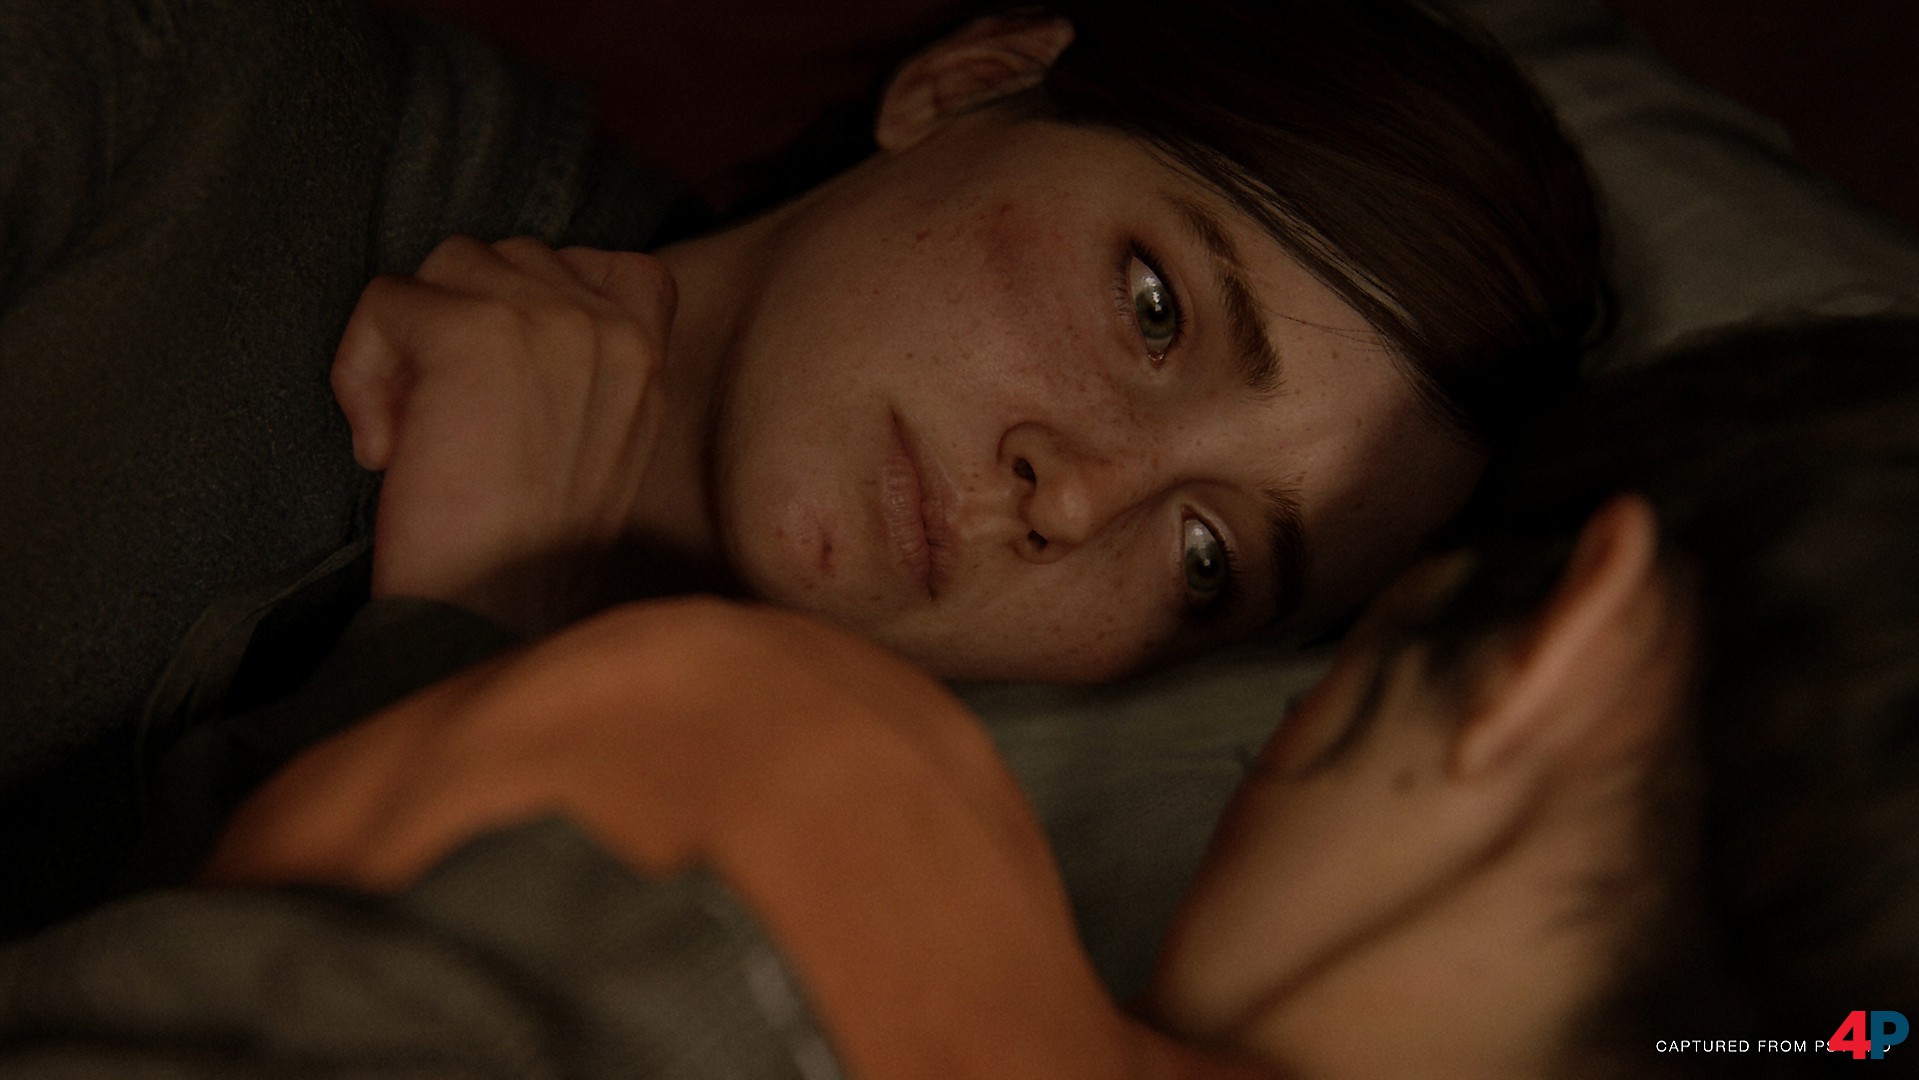 Ellie und Dina aus The Last of Us Part 2 sind vielleicht eines des bekanntesten homosexuellen Paare in der Videospielwelt.